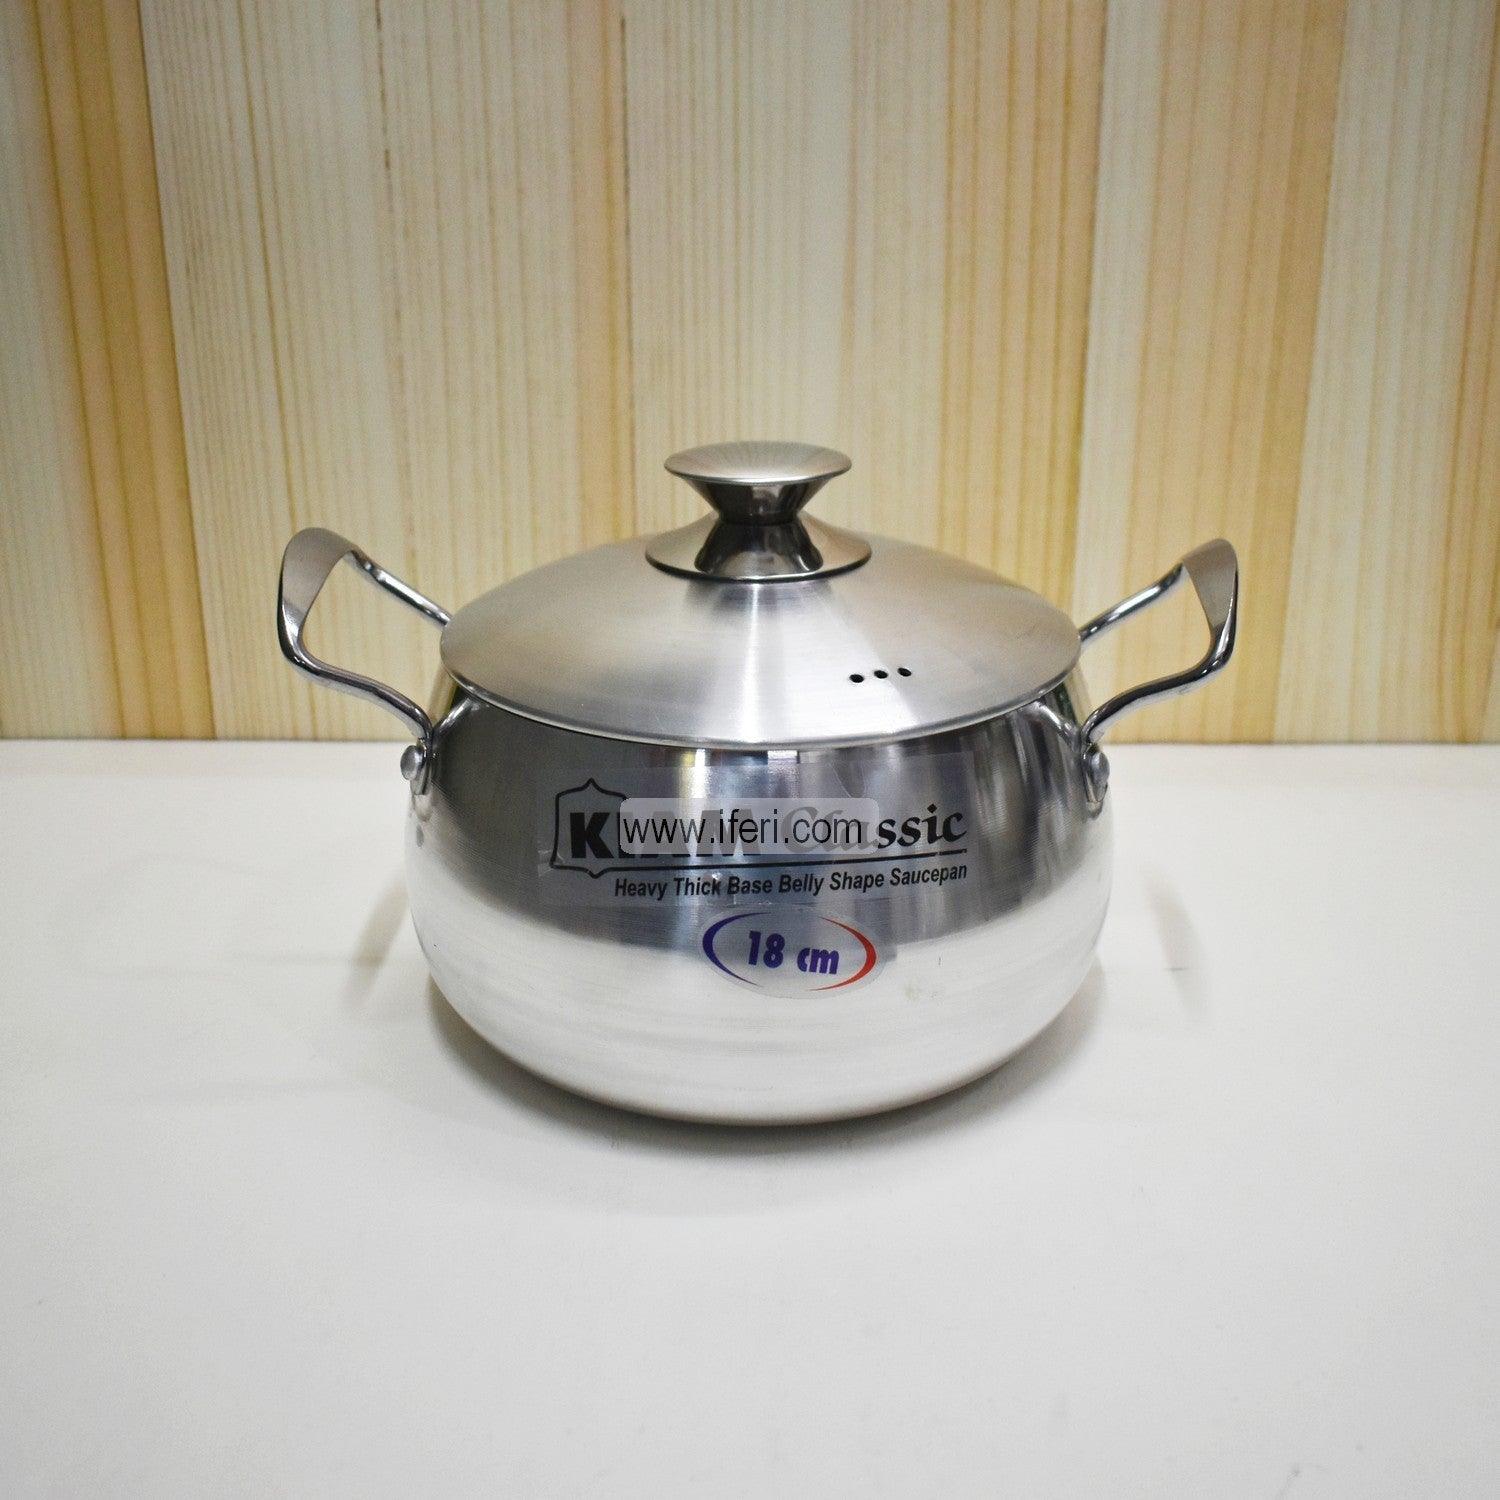 20 cm Kiam Aluminium Belly Shape Cookware With Aluminium Lid BCG0221 Price in Bangladesh - iferi.com